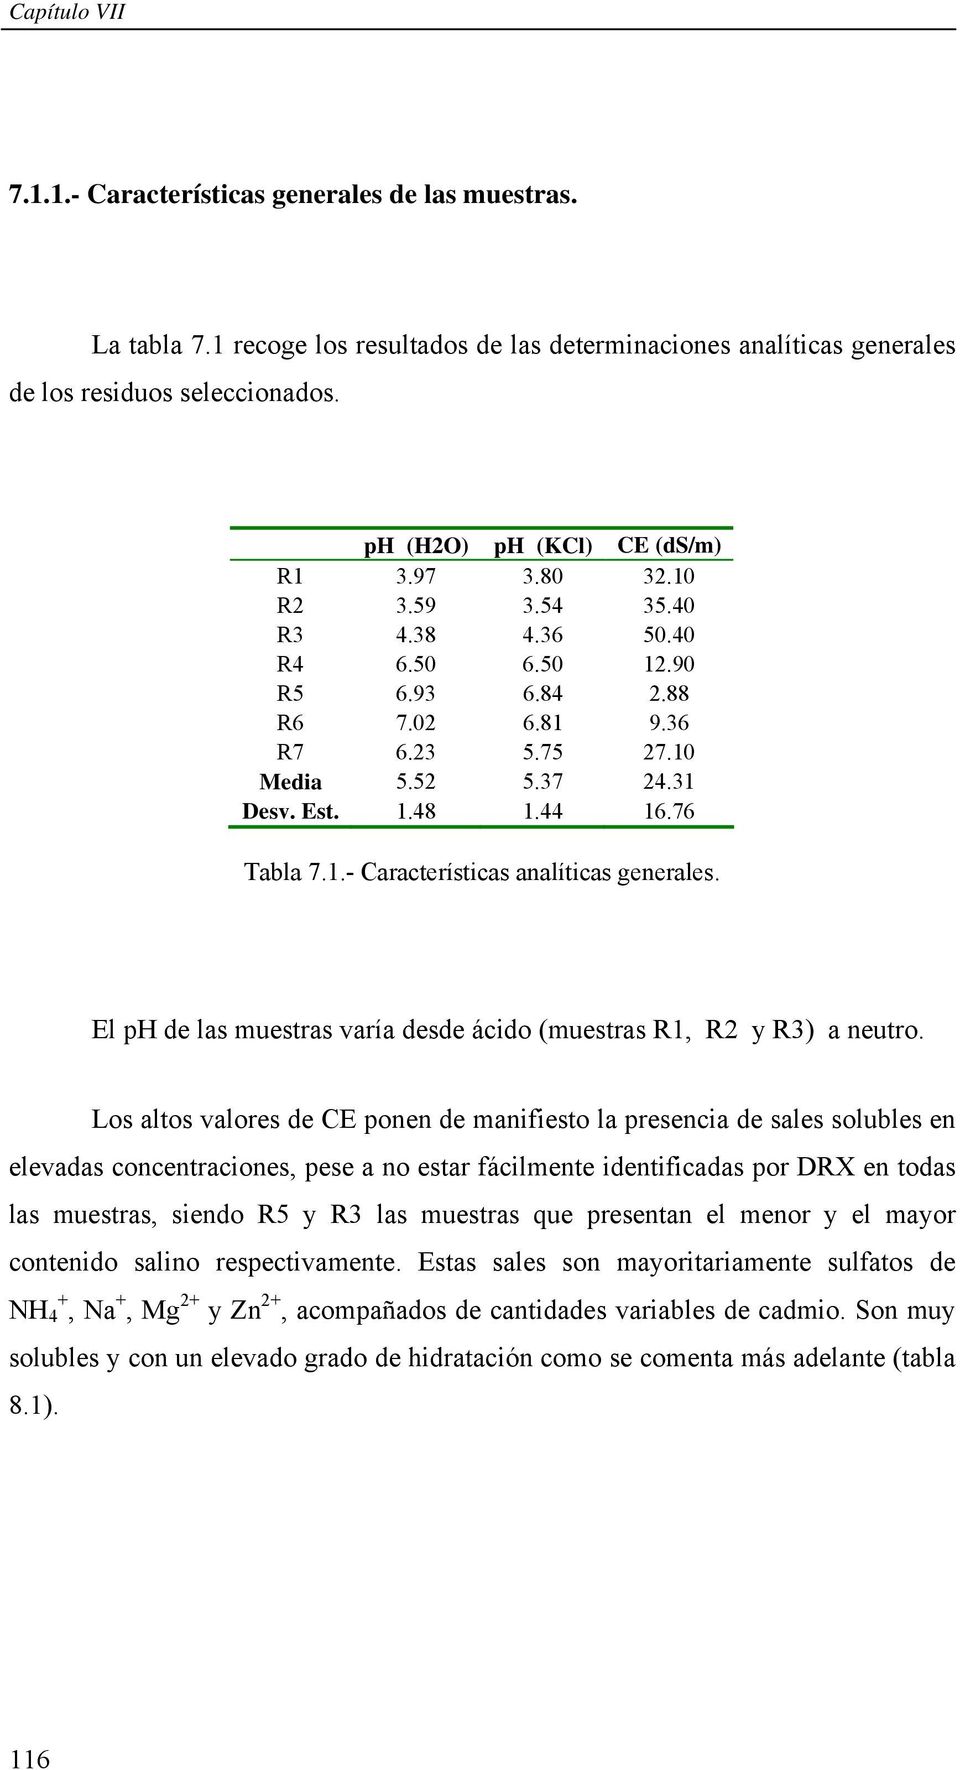 44 16.76 Tabla 7.1.- Características analíticas generales. El ph de las muestras varía desde ácido (muestras R1, R2 y R3) a neutro.